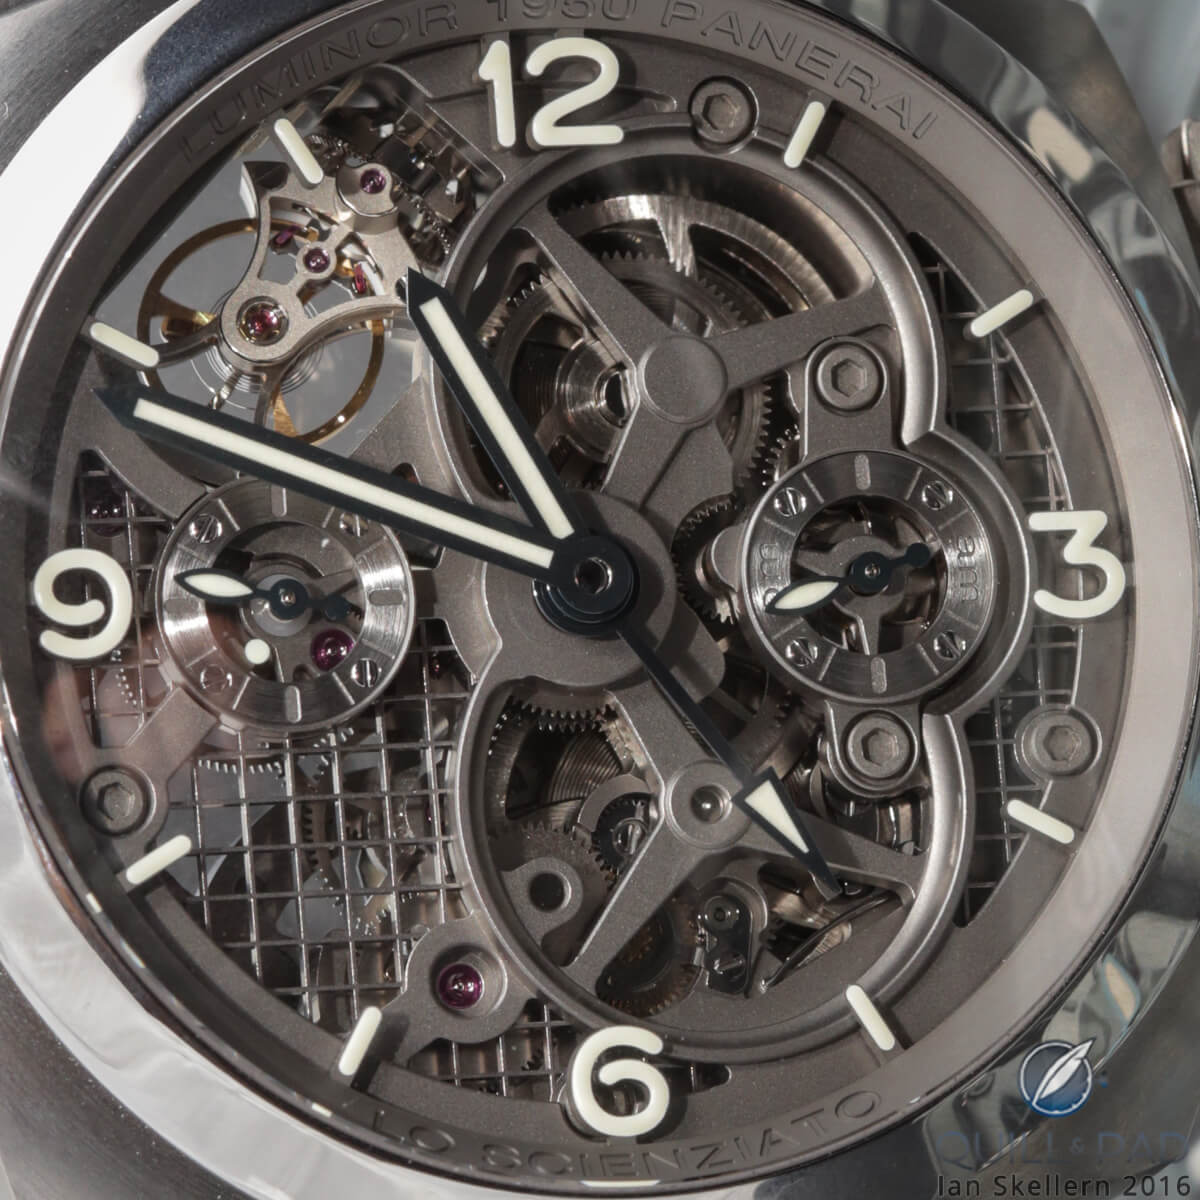 Close look at the dial of the Panerai Lo Scienziato Luminor 1950 Tourbillon GMT Titanium